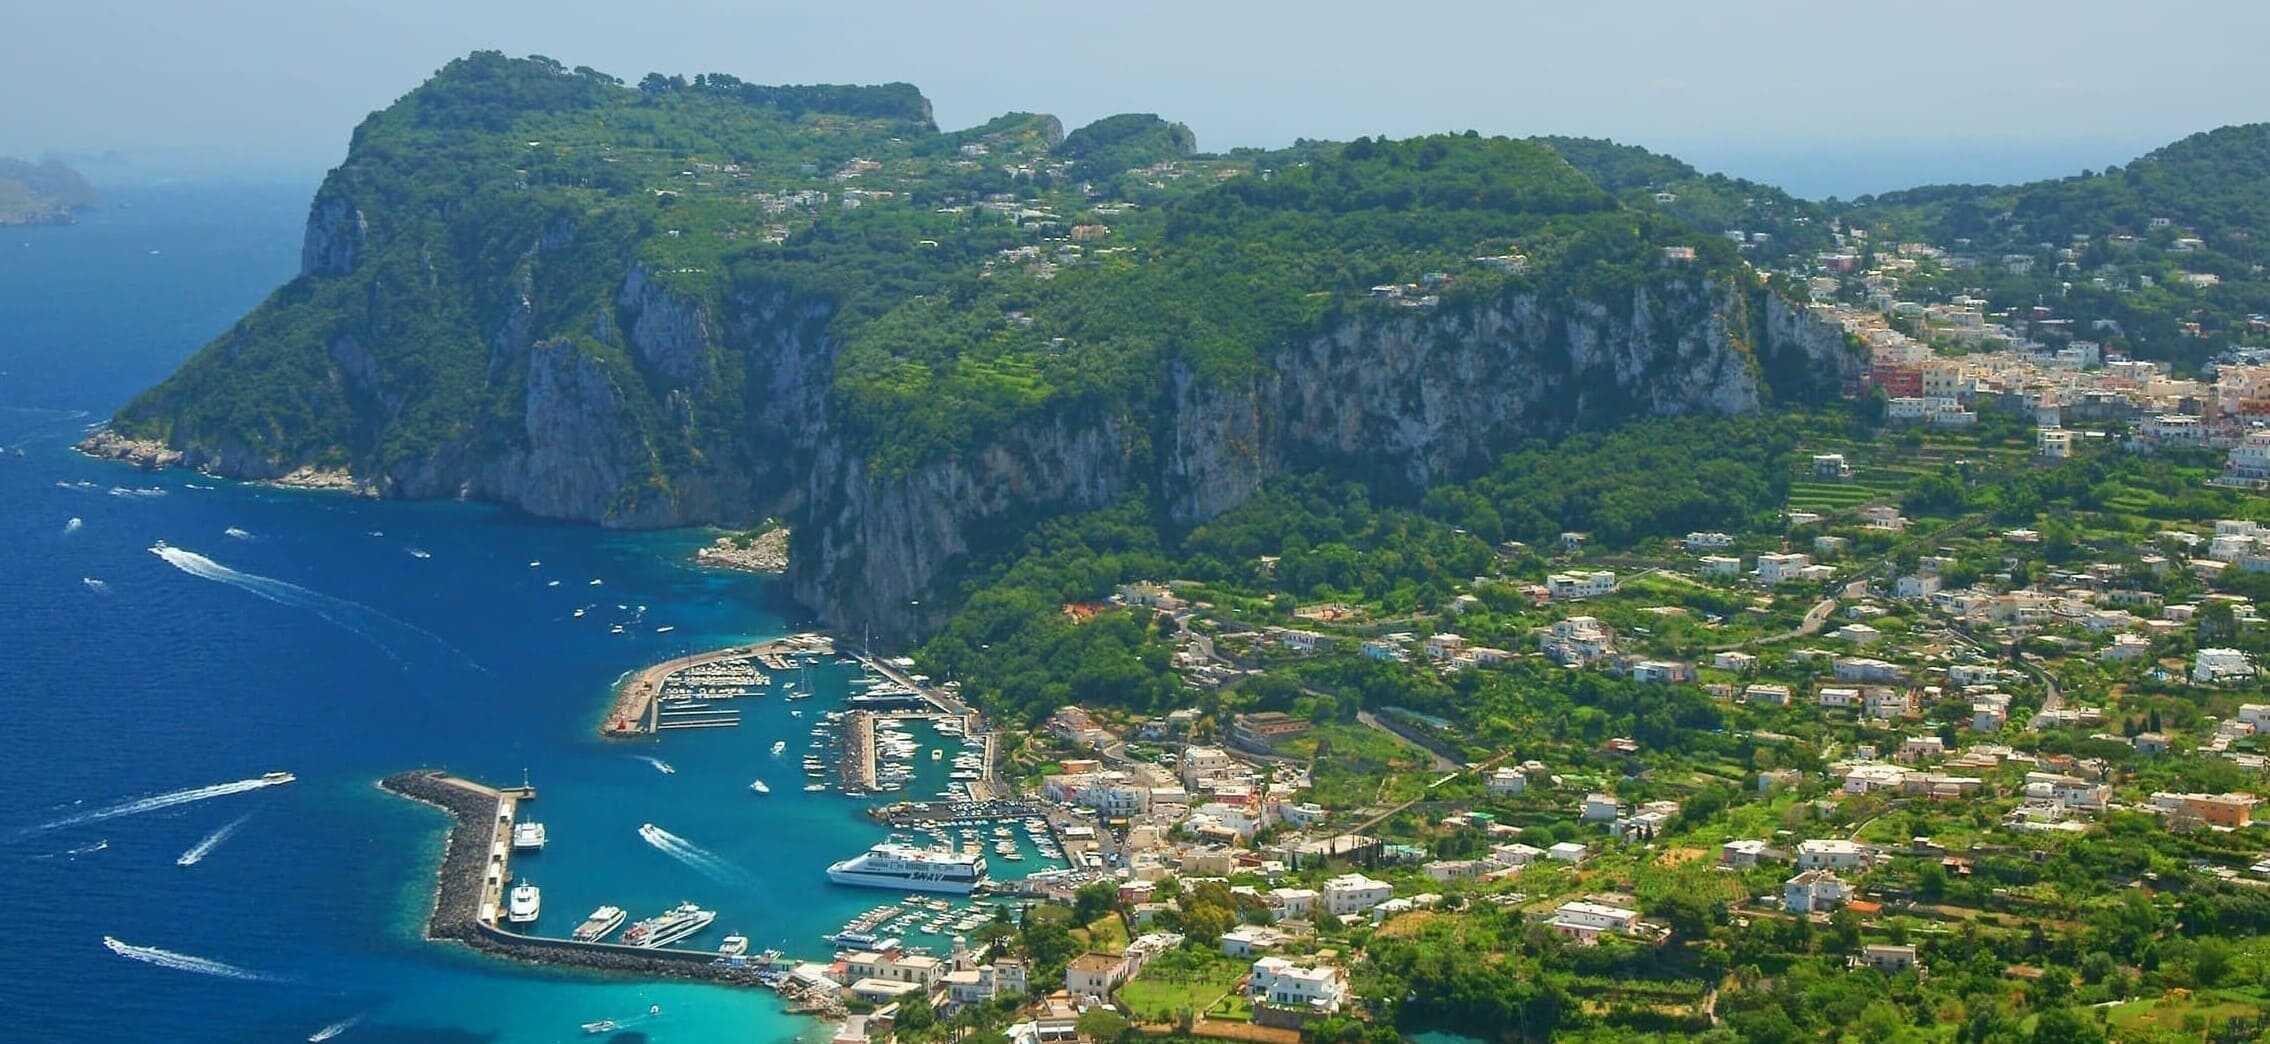 Vista aérea de la isla de Capri donde se puede observar el puerto de Marina Grande.